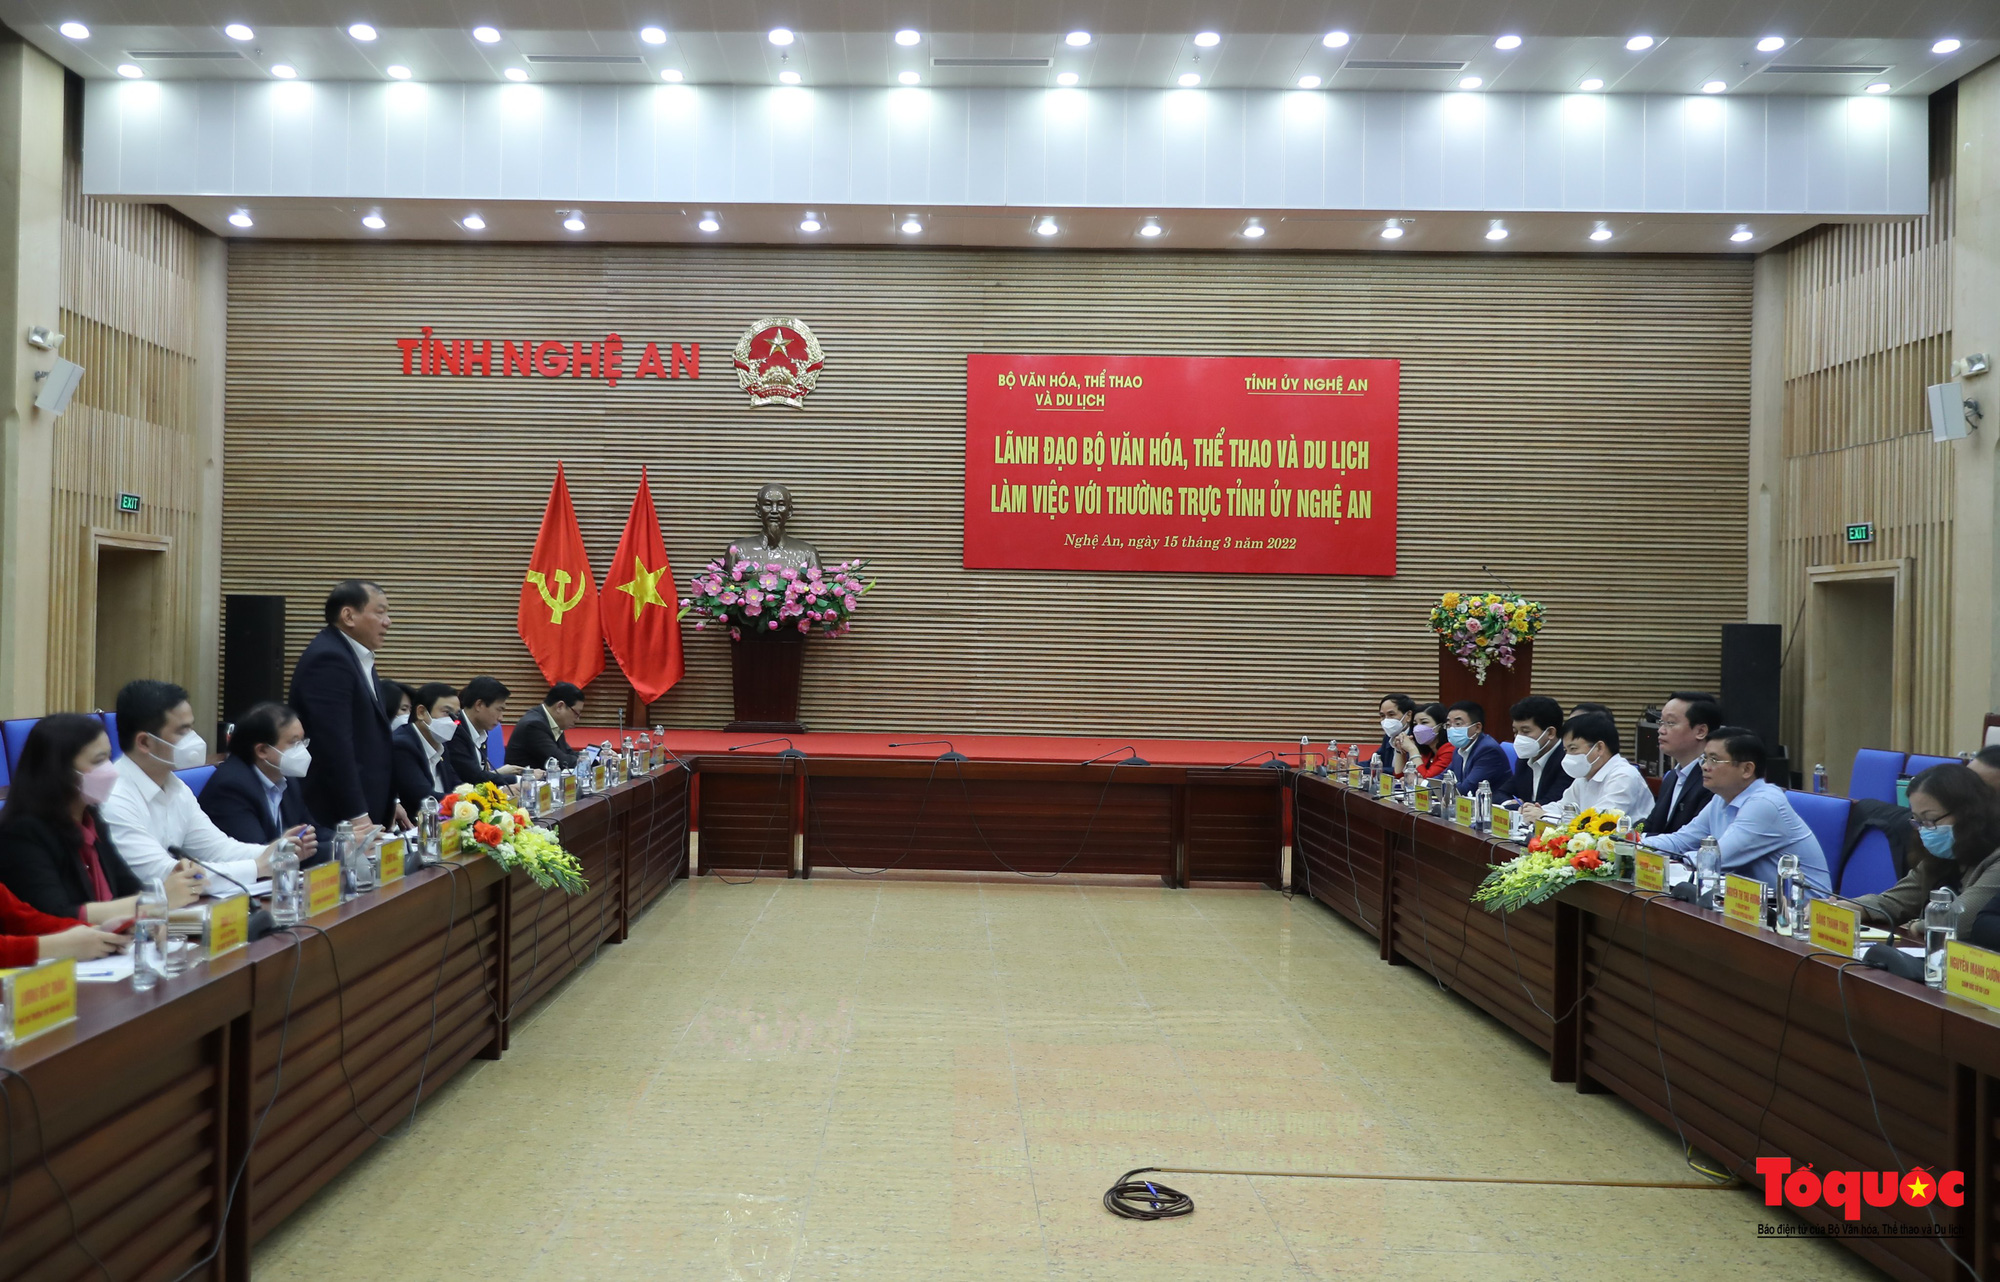 Bộ trưởng Nguyễn Văn Hùng: “Phải đặt được tên gọi, viết nên câu chuyện về thương hiệu du lịch tỉnh Nghệ An”